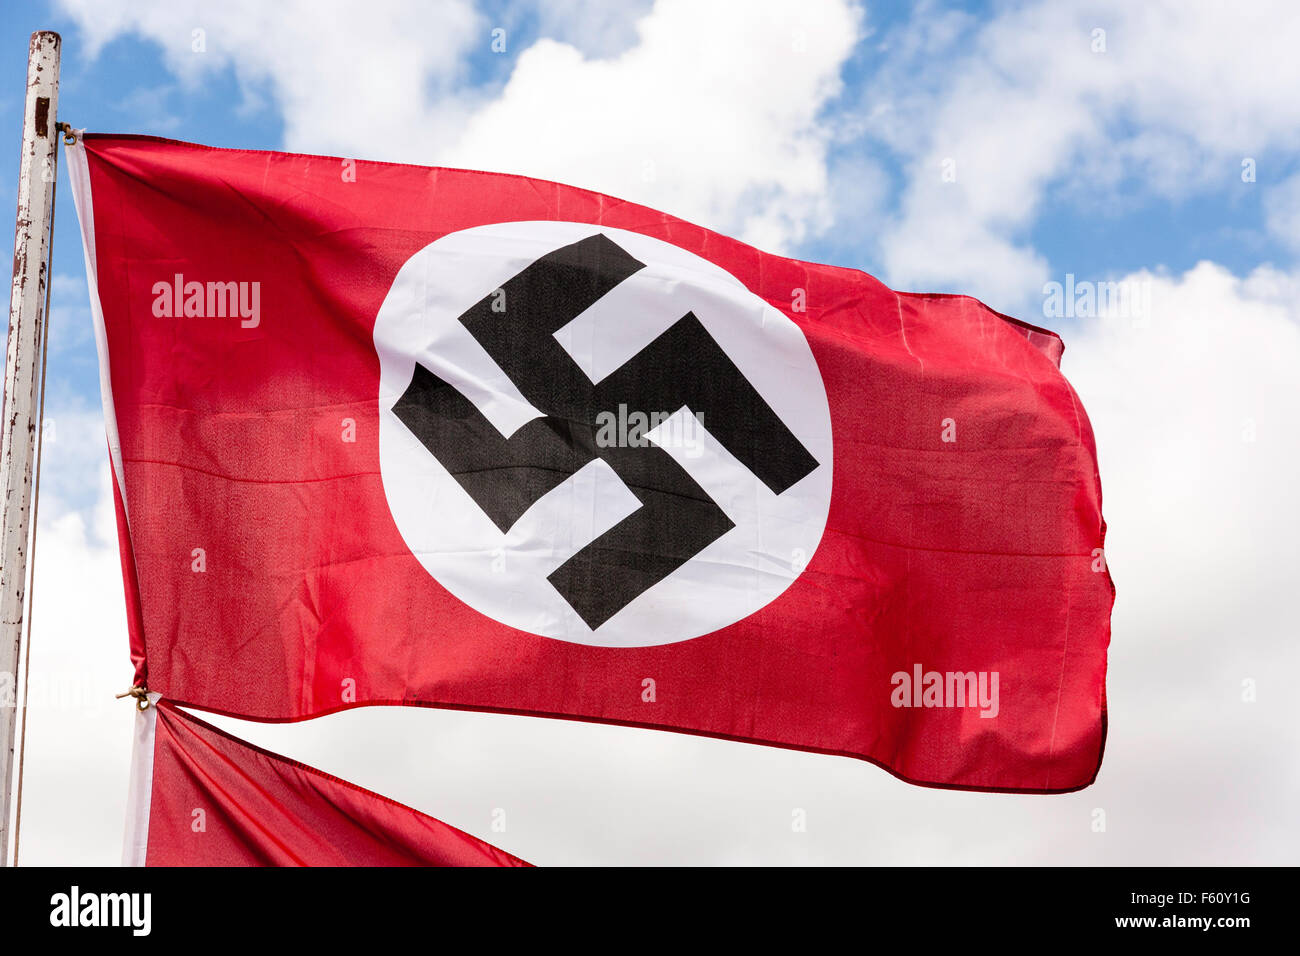 La seconda guerra mondiale la rievocazione. Il tedesco rosso, bianco e nero nazista svastica bandiera. Che fluttua nel vento contro il cielo blu con nuvole bianche. Foto Stock